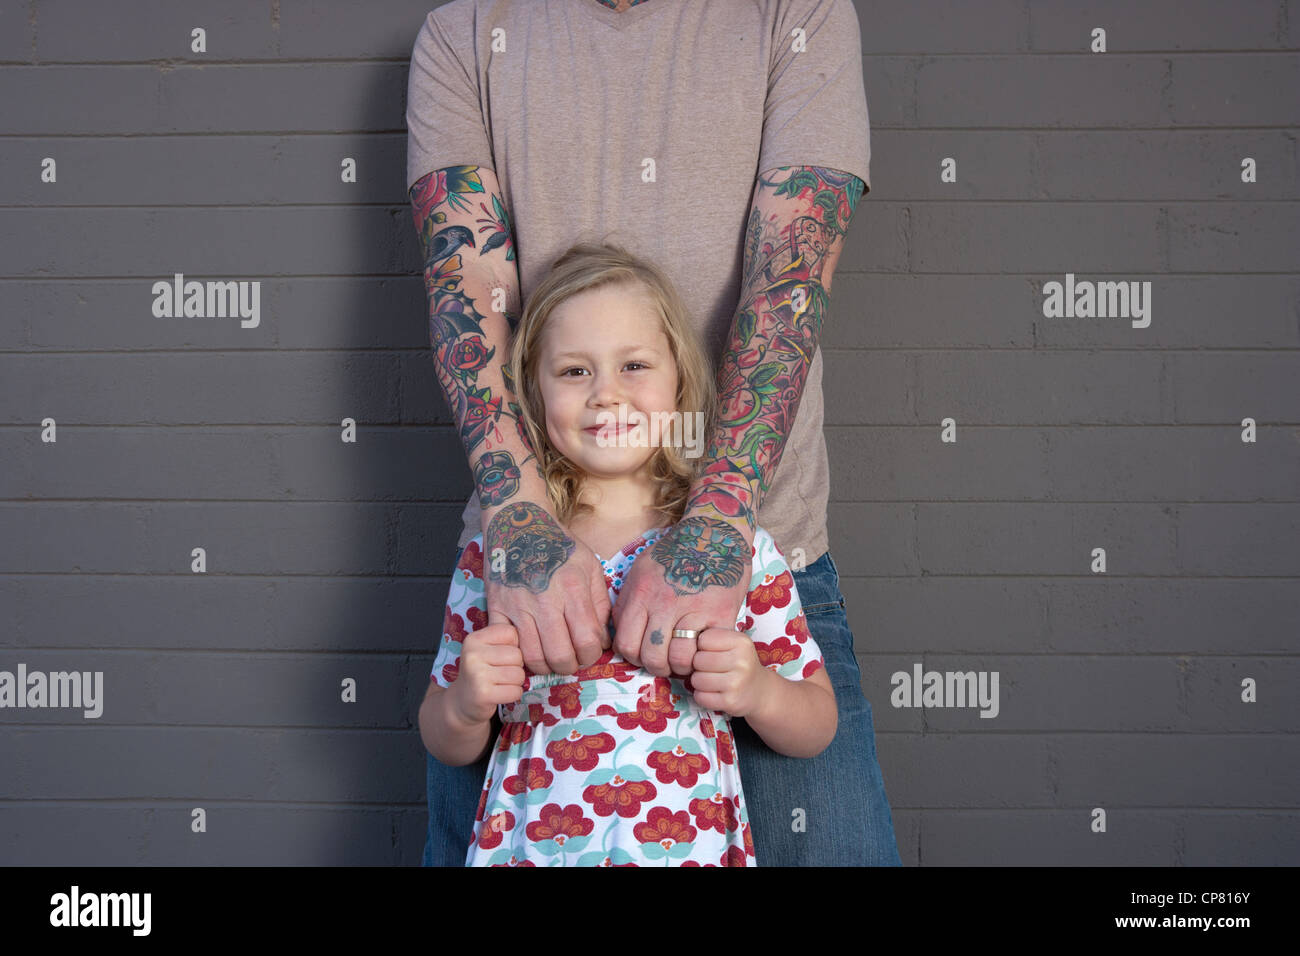 Portrait du père avec tatouage au bras et mains, debout avec sa fille âgée de cinq ans. Banque D'Images